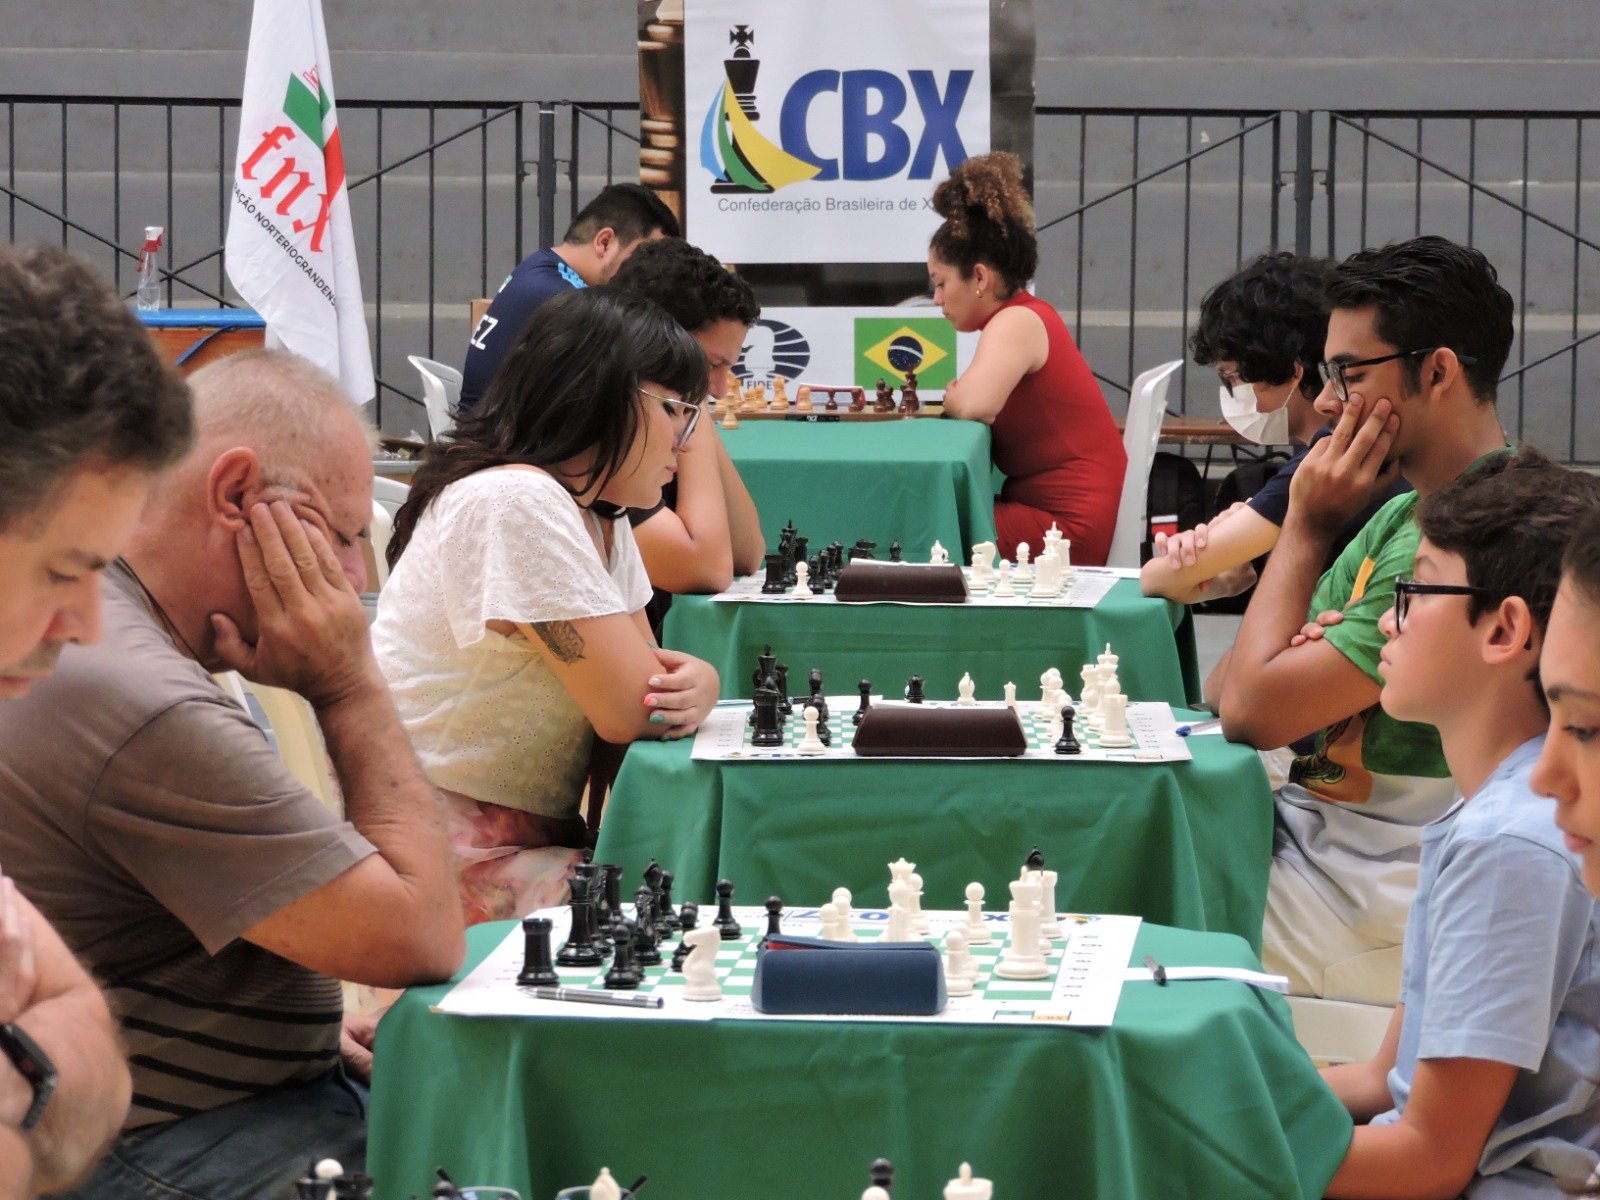 CBX - Confederação Brasileira de Xadrez